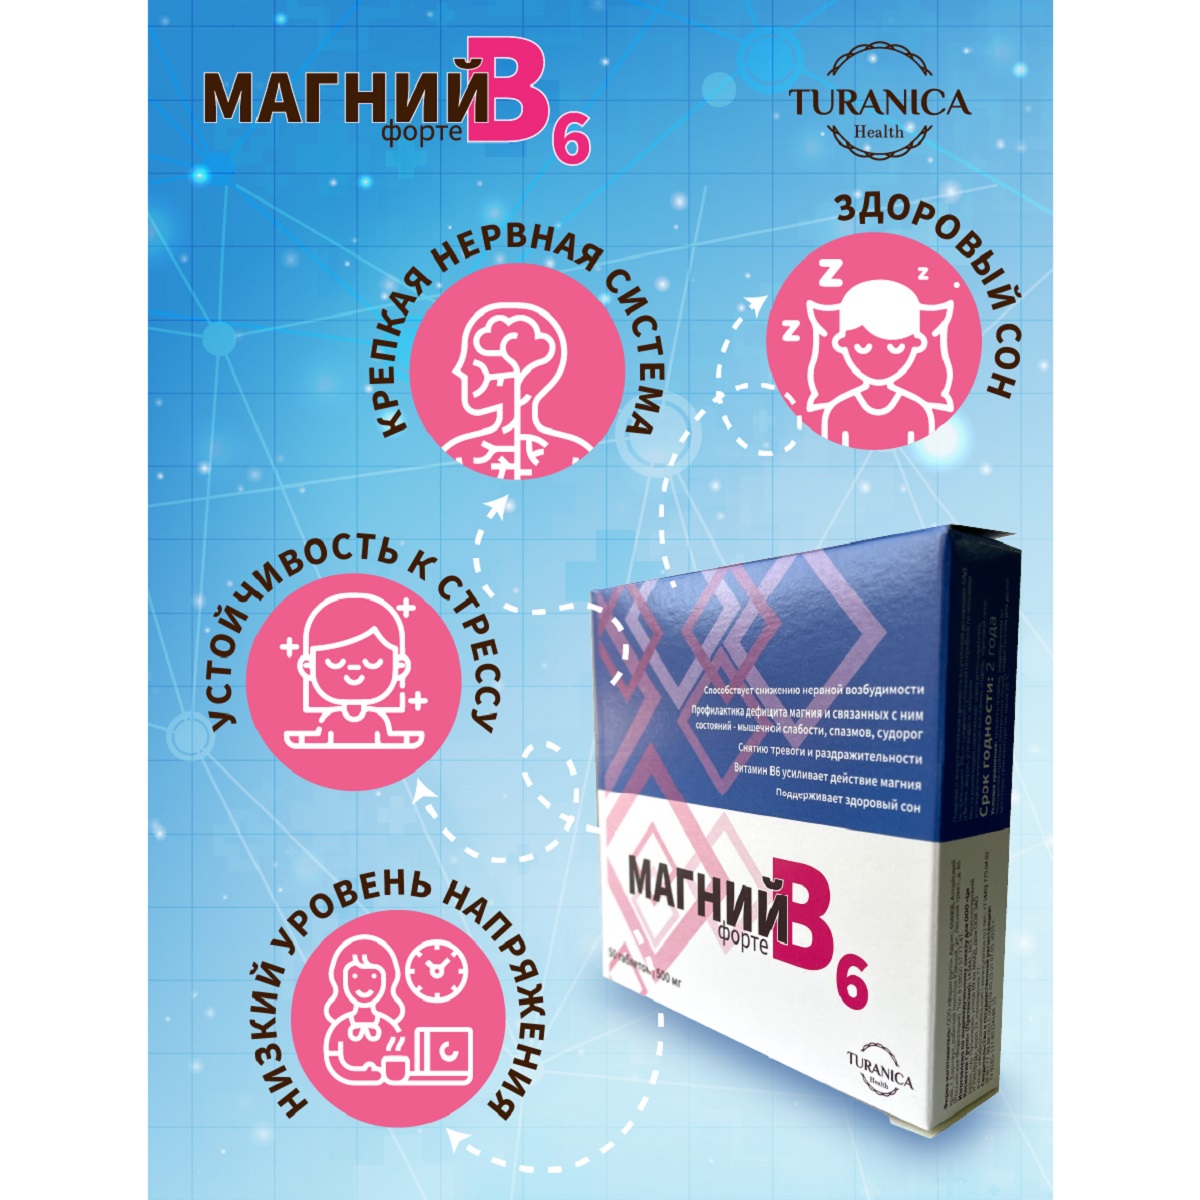 Магний В6 форте TURANICA 200 таблеток по 500 мг - фото 3